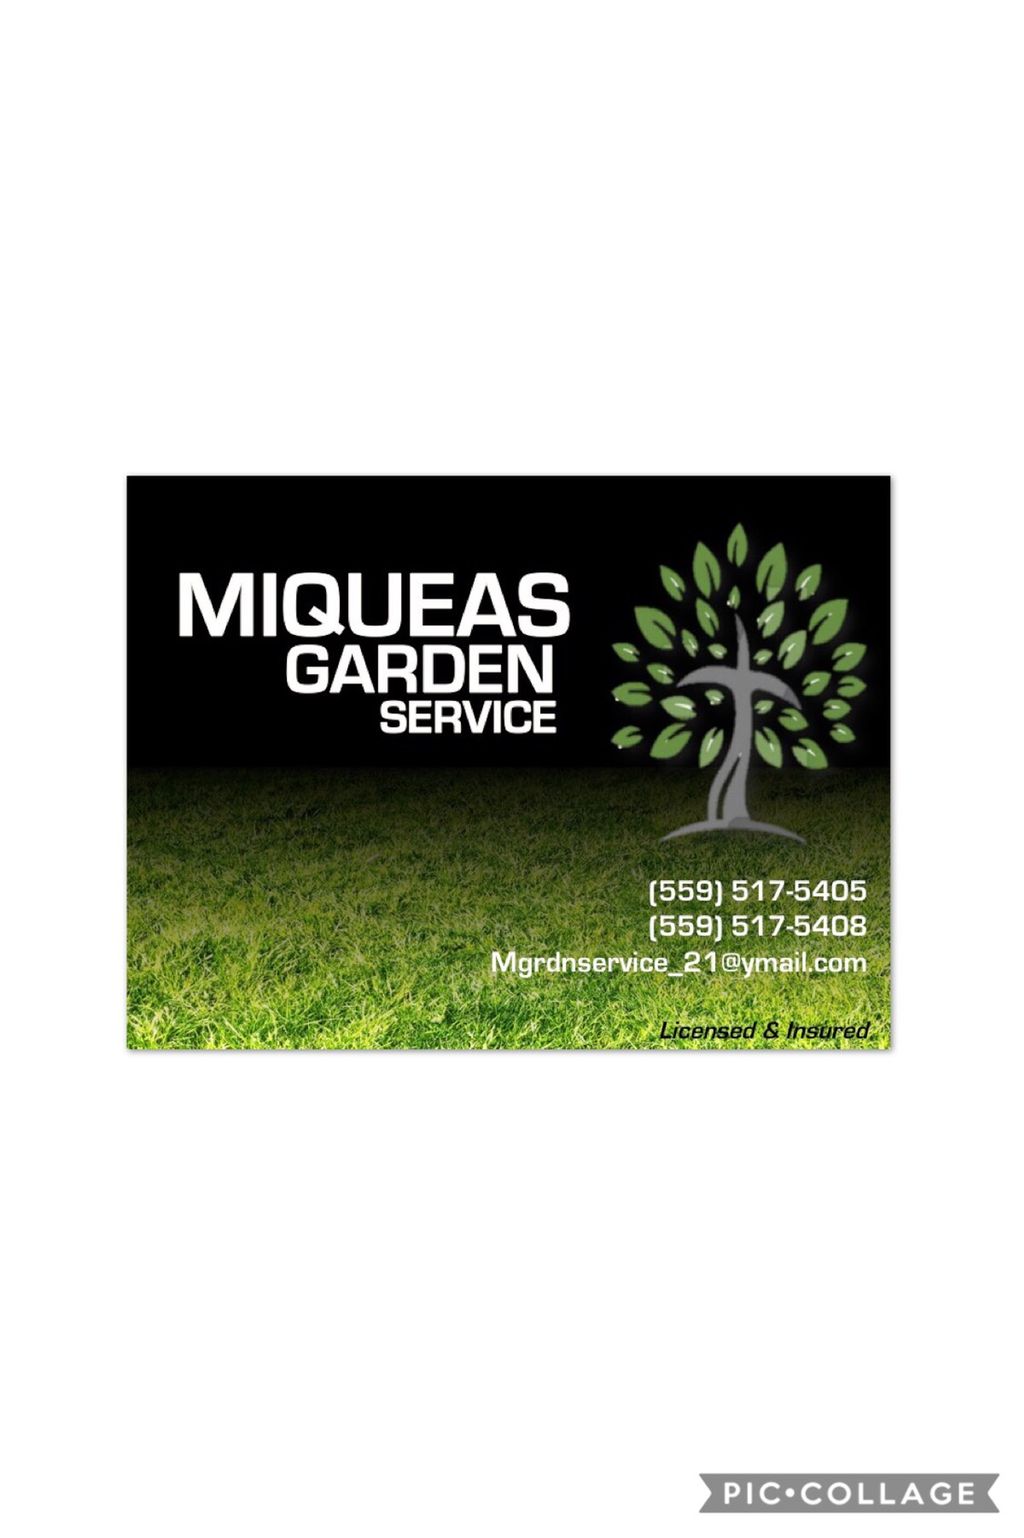 Miqueas Garden Service